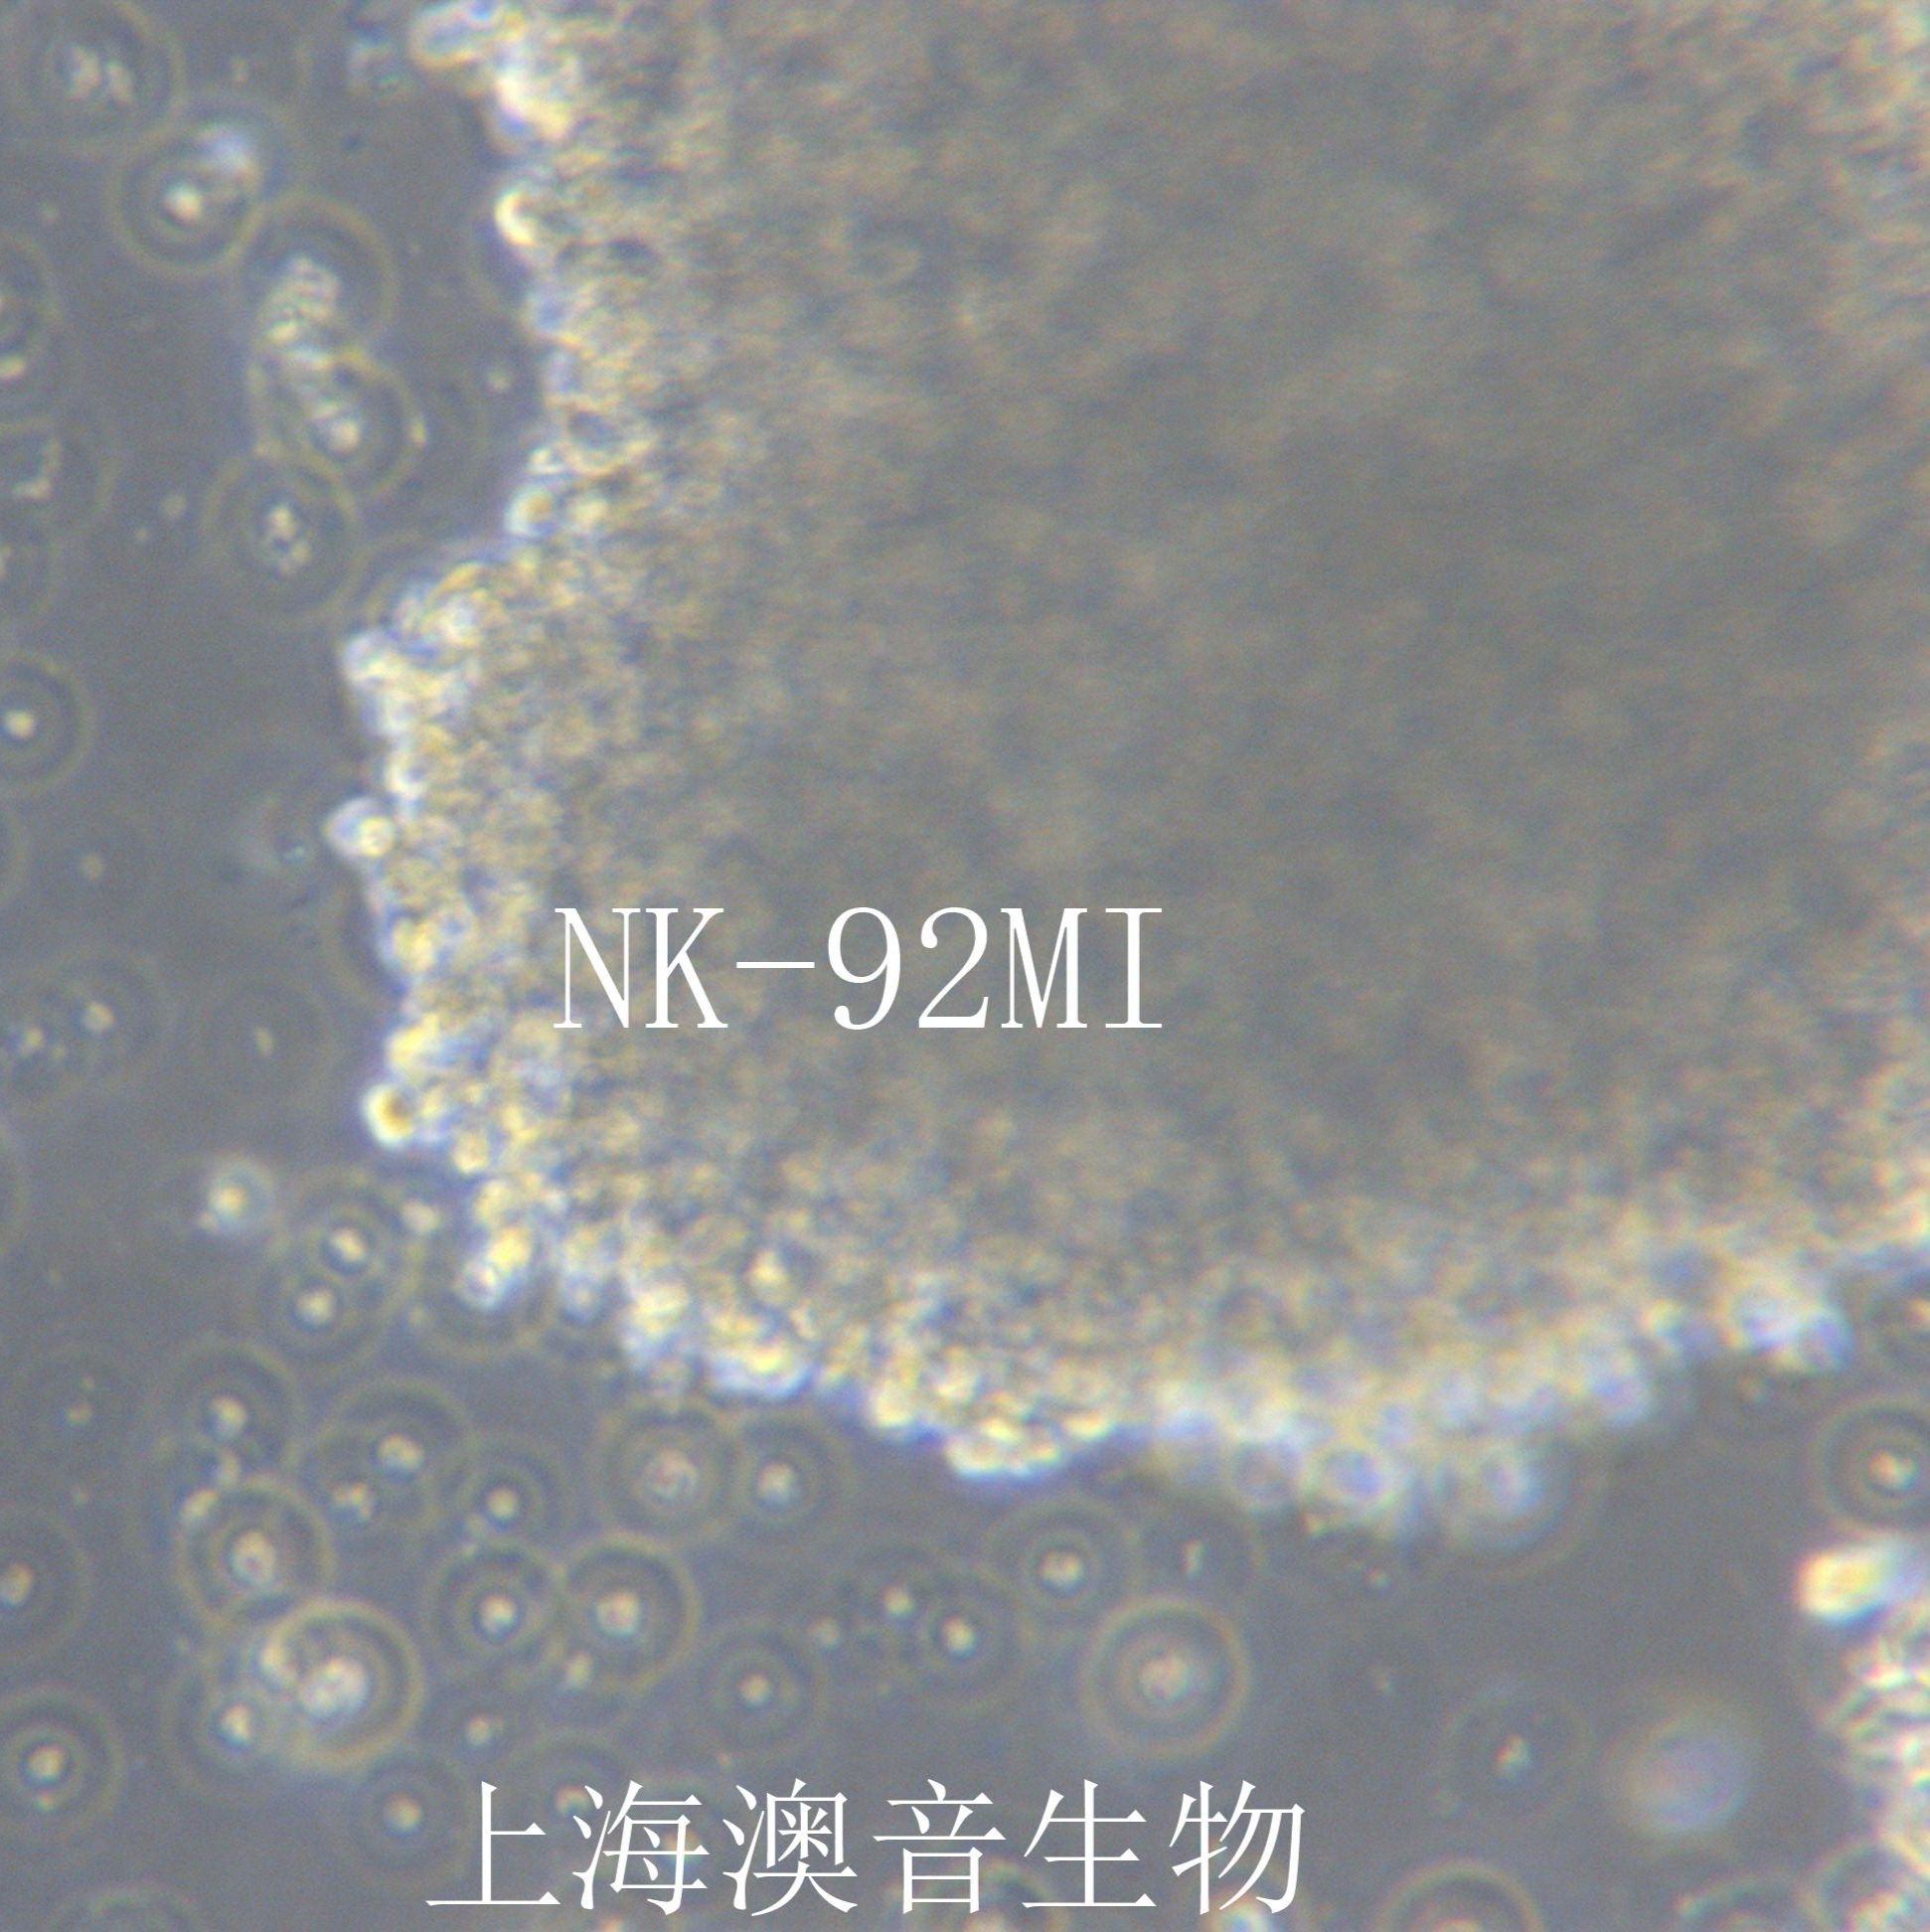 NK-92MI [NK-92 MI; NK-92 mi; NK92-MI; NK92MI; NK-92 transfected with MFG-hIL2]人恶性非霍奇金淋巴瘤患者的自然杀伤细胞